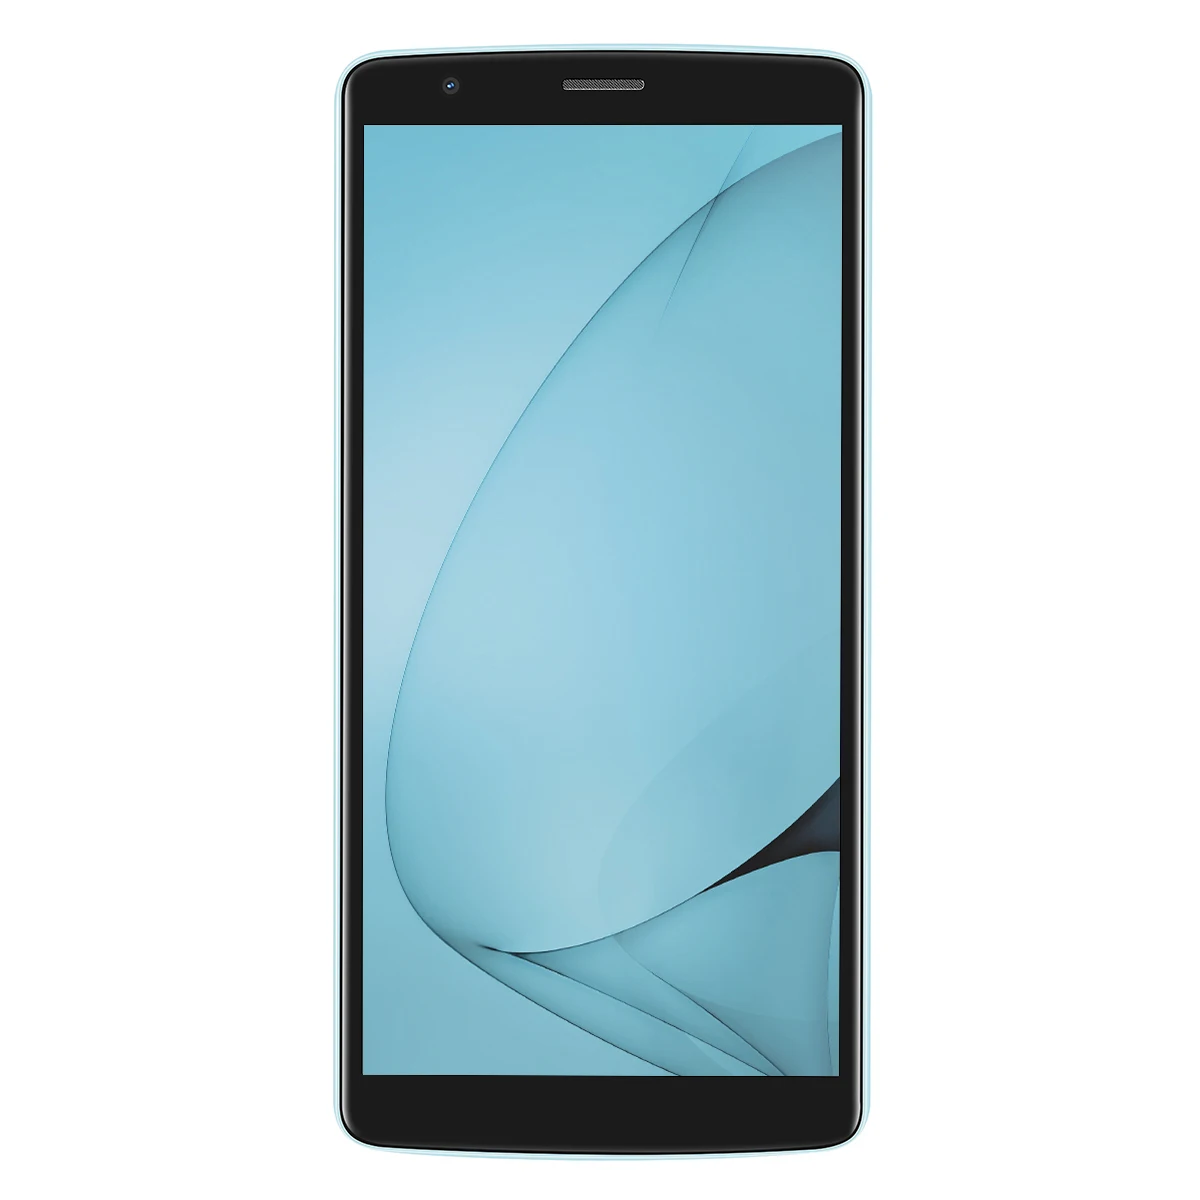 Оригинальный смартфон Blackview A20 Android Go 18:9 5,5 дюймов с двойной камерой 1 ГБ ОЗУ 8 Гб ПЗУ MT6580M 5MP 3g мобильный телефон